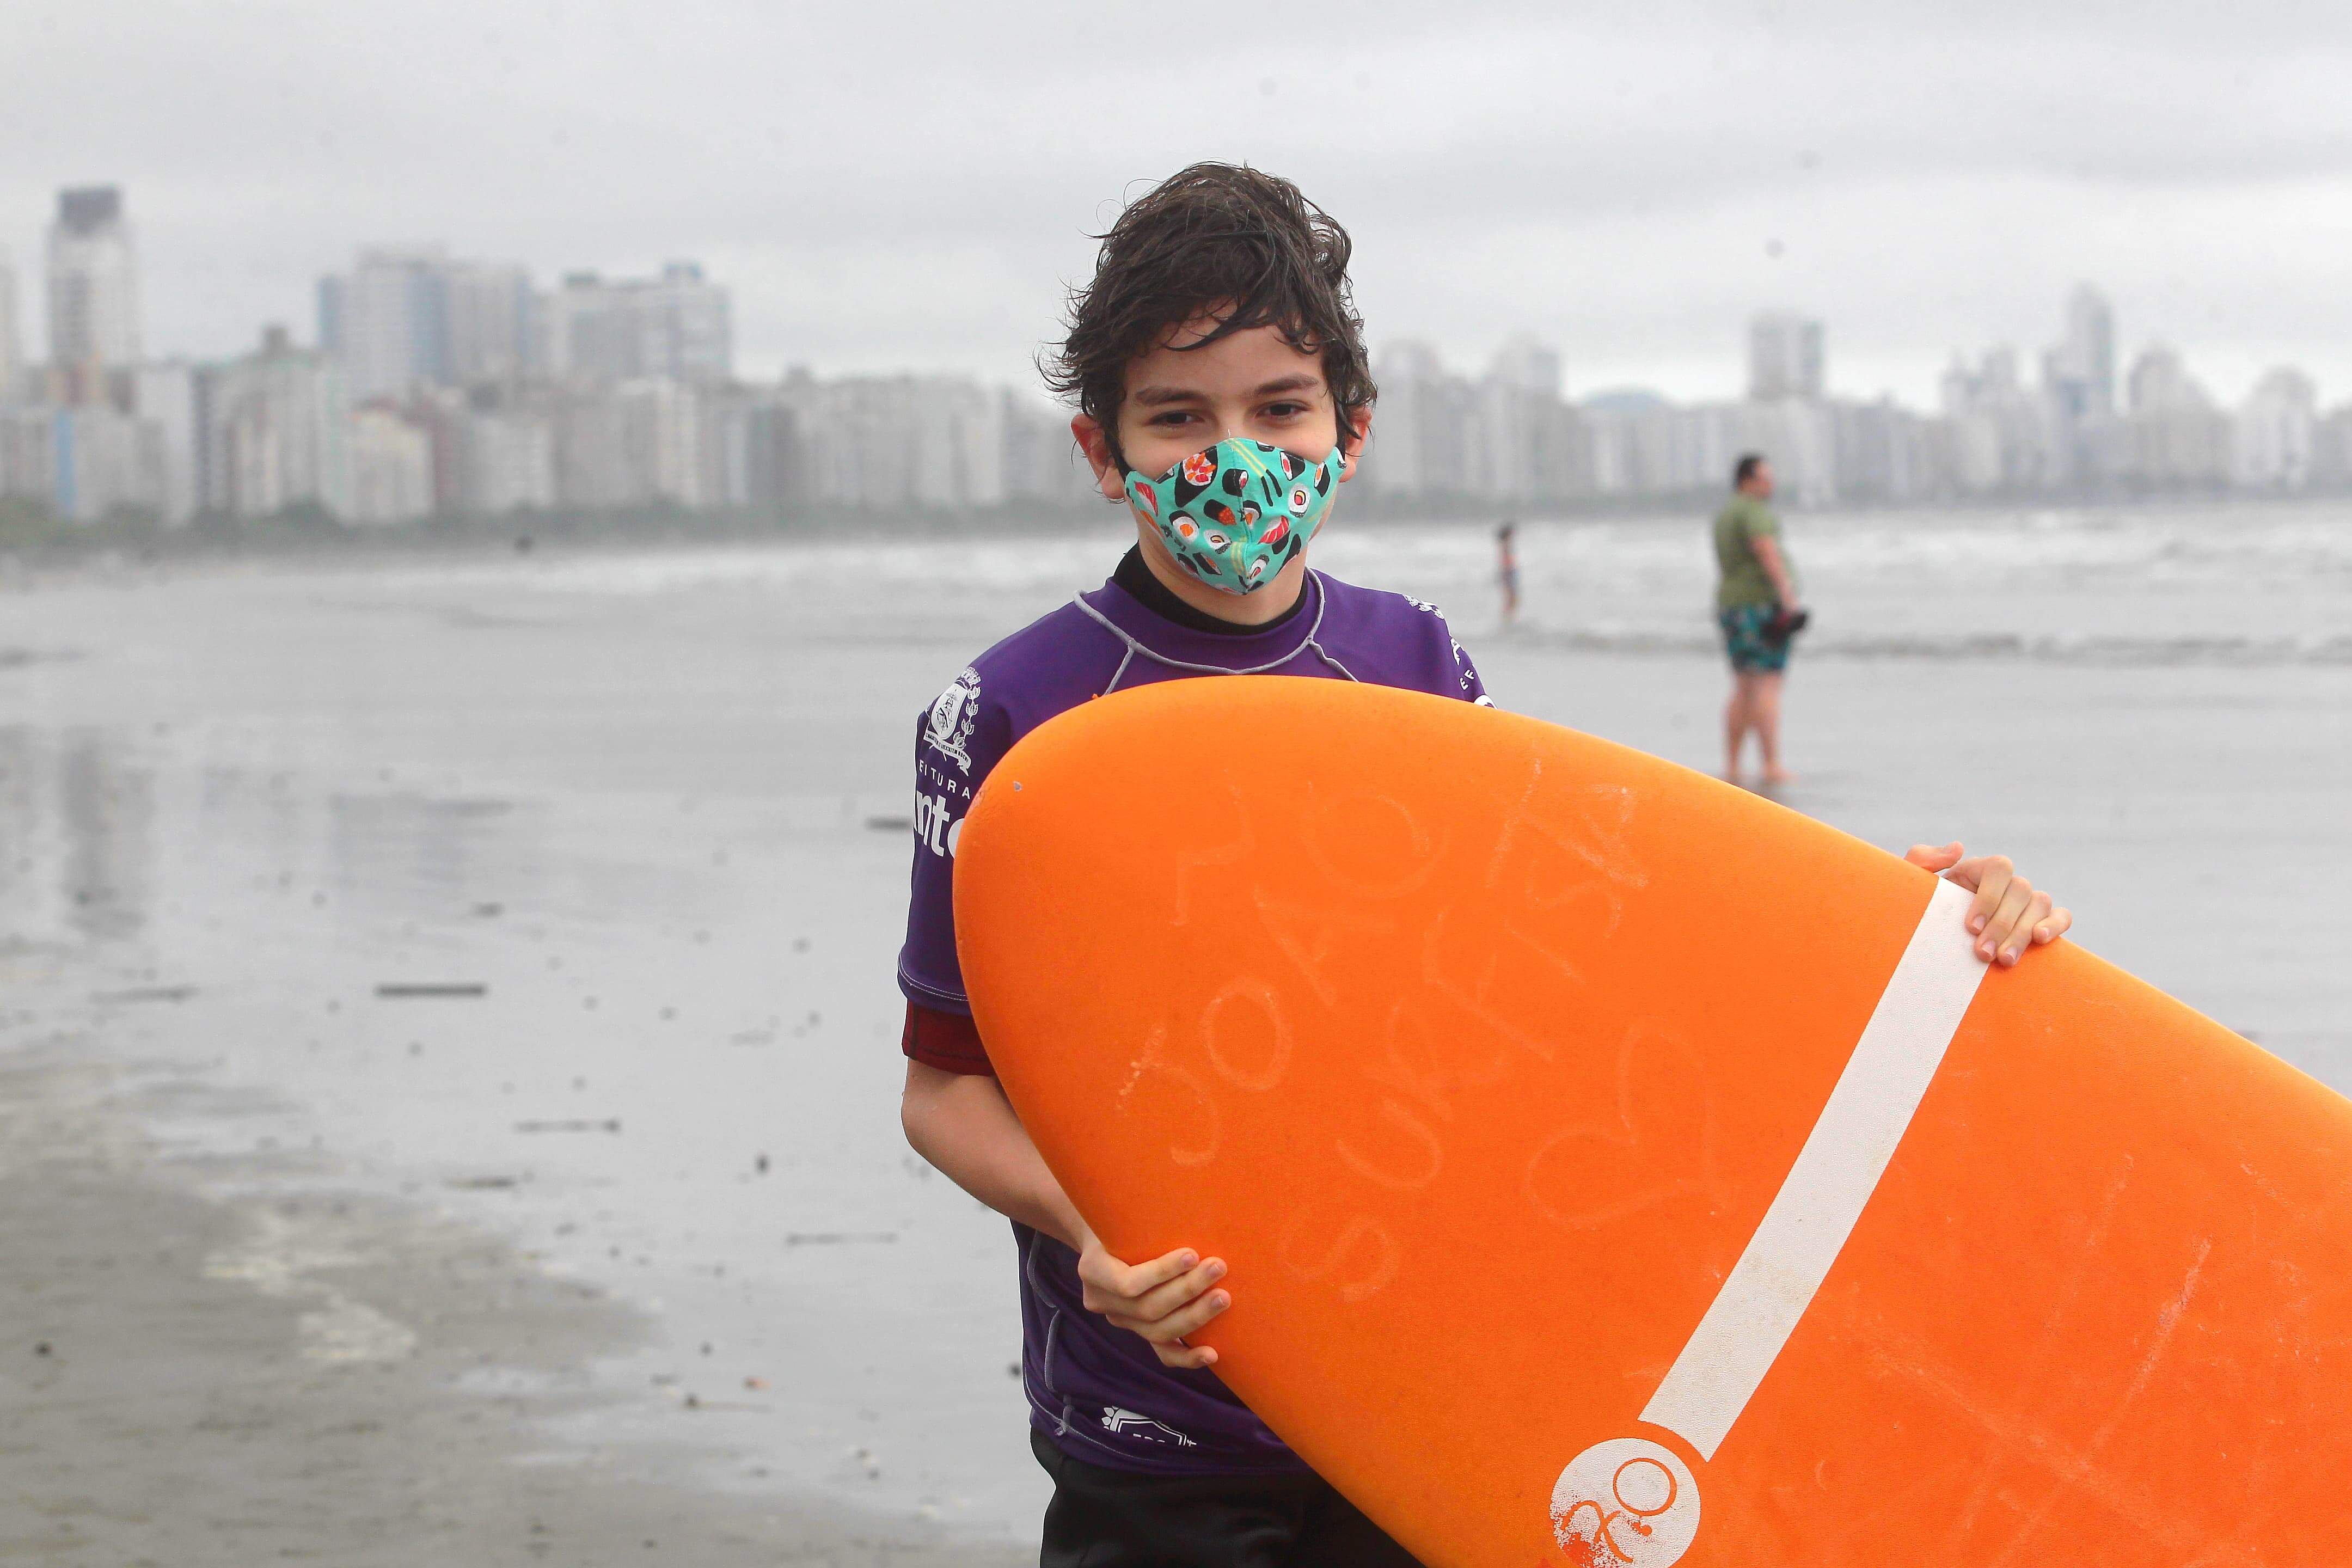 João Vitor tem autismo. O surfe o ajudou a desenvolver habilidades